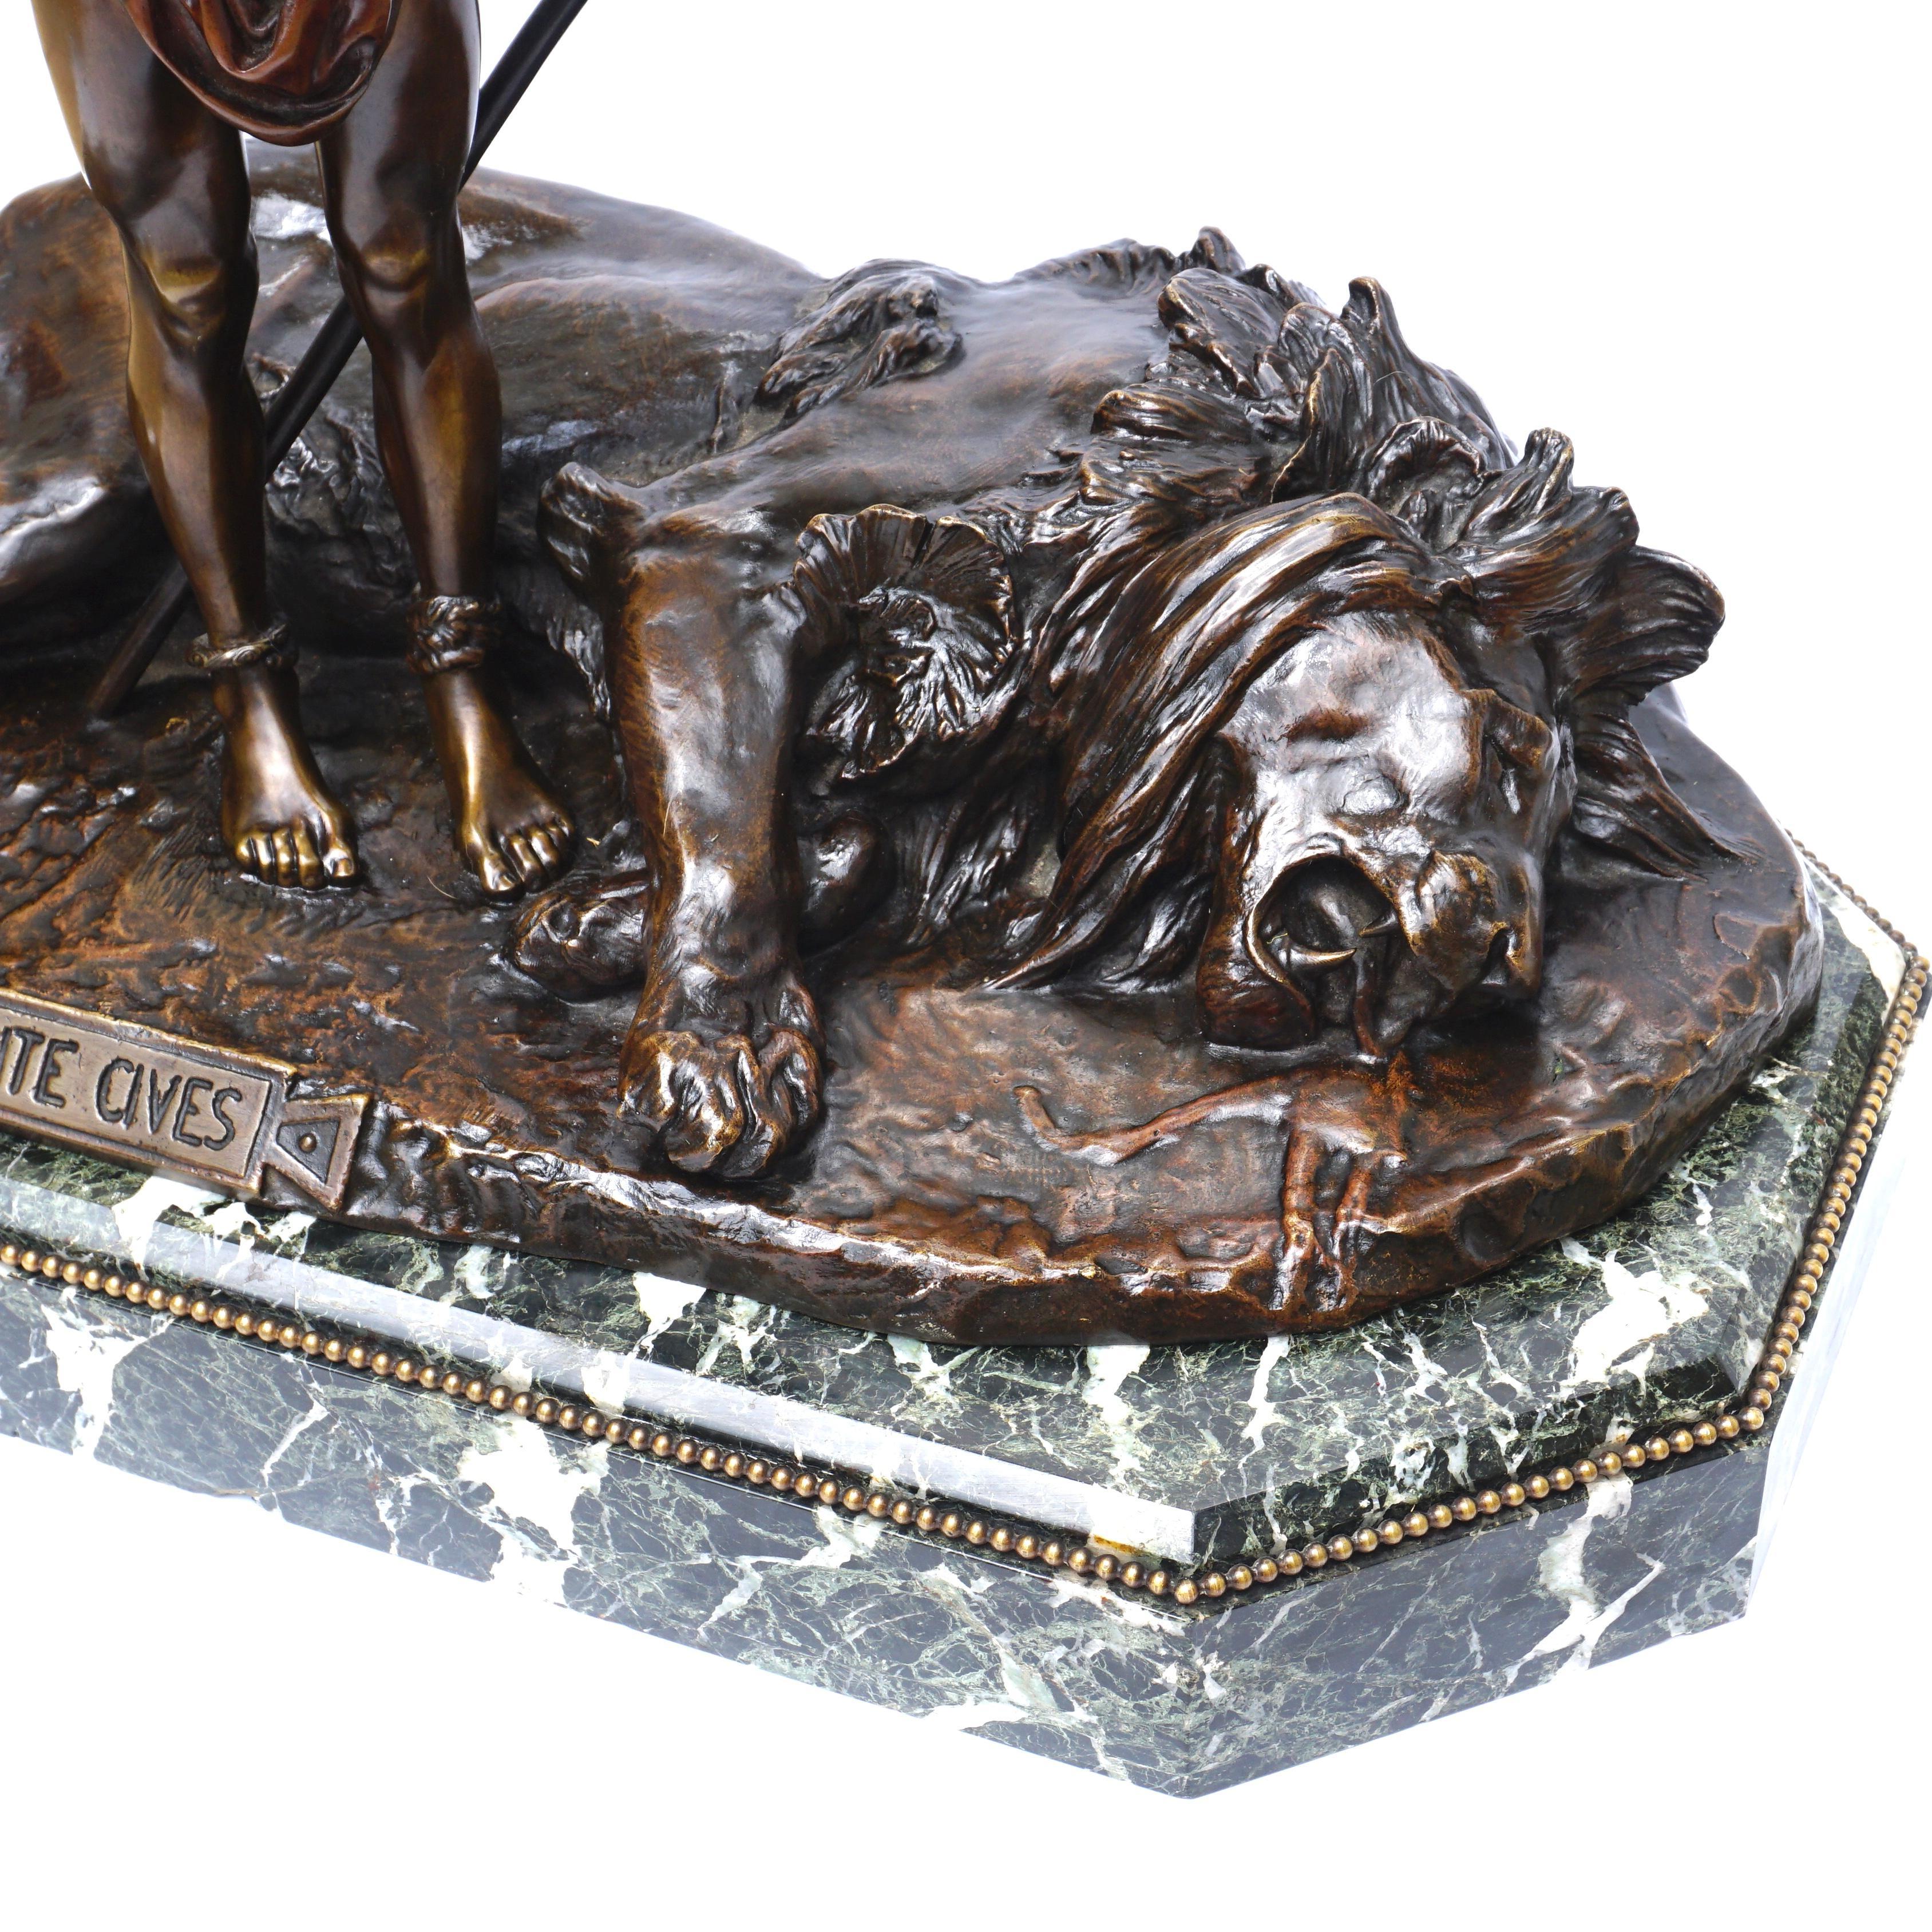 Jean-Léon Gérôme (1824 - 1904) FRANCESE
BELLUAIRE O PLAUDITE CIVES. 

Questa scultura mostra la scena di un colosseo romano dove un gladiatore ha appena terminato la sua battaglia con un grande leone. L'omone vestito con un perizoma e un'armatura